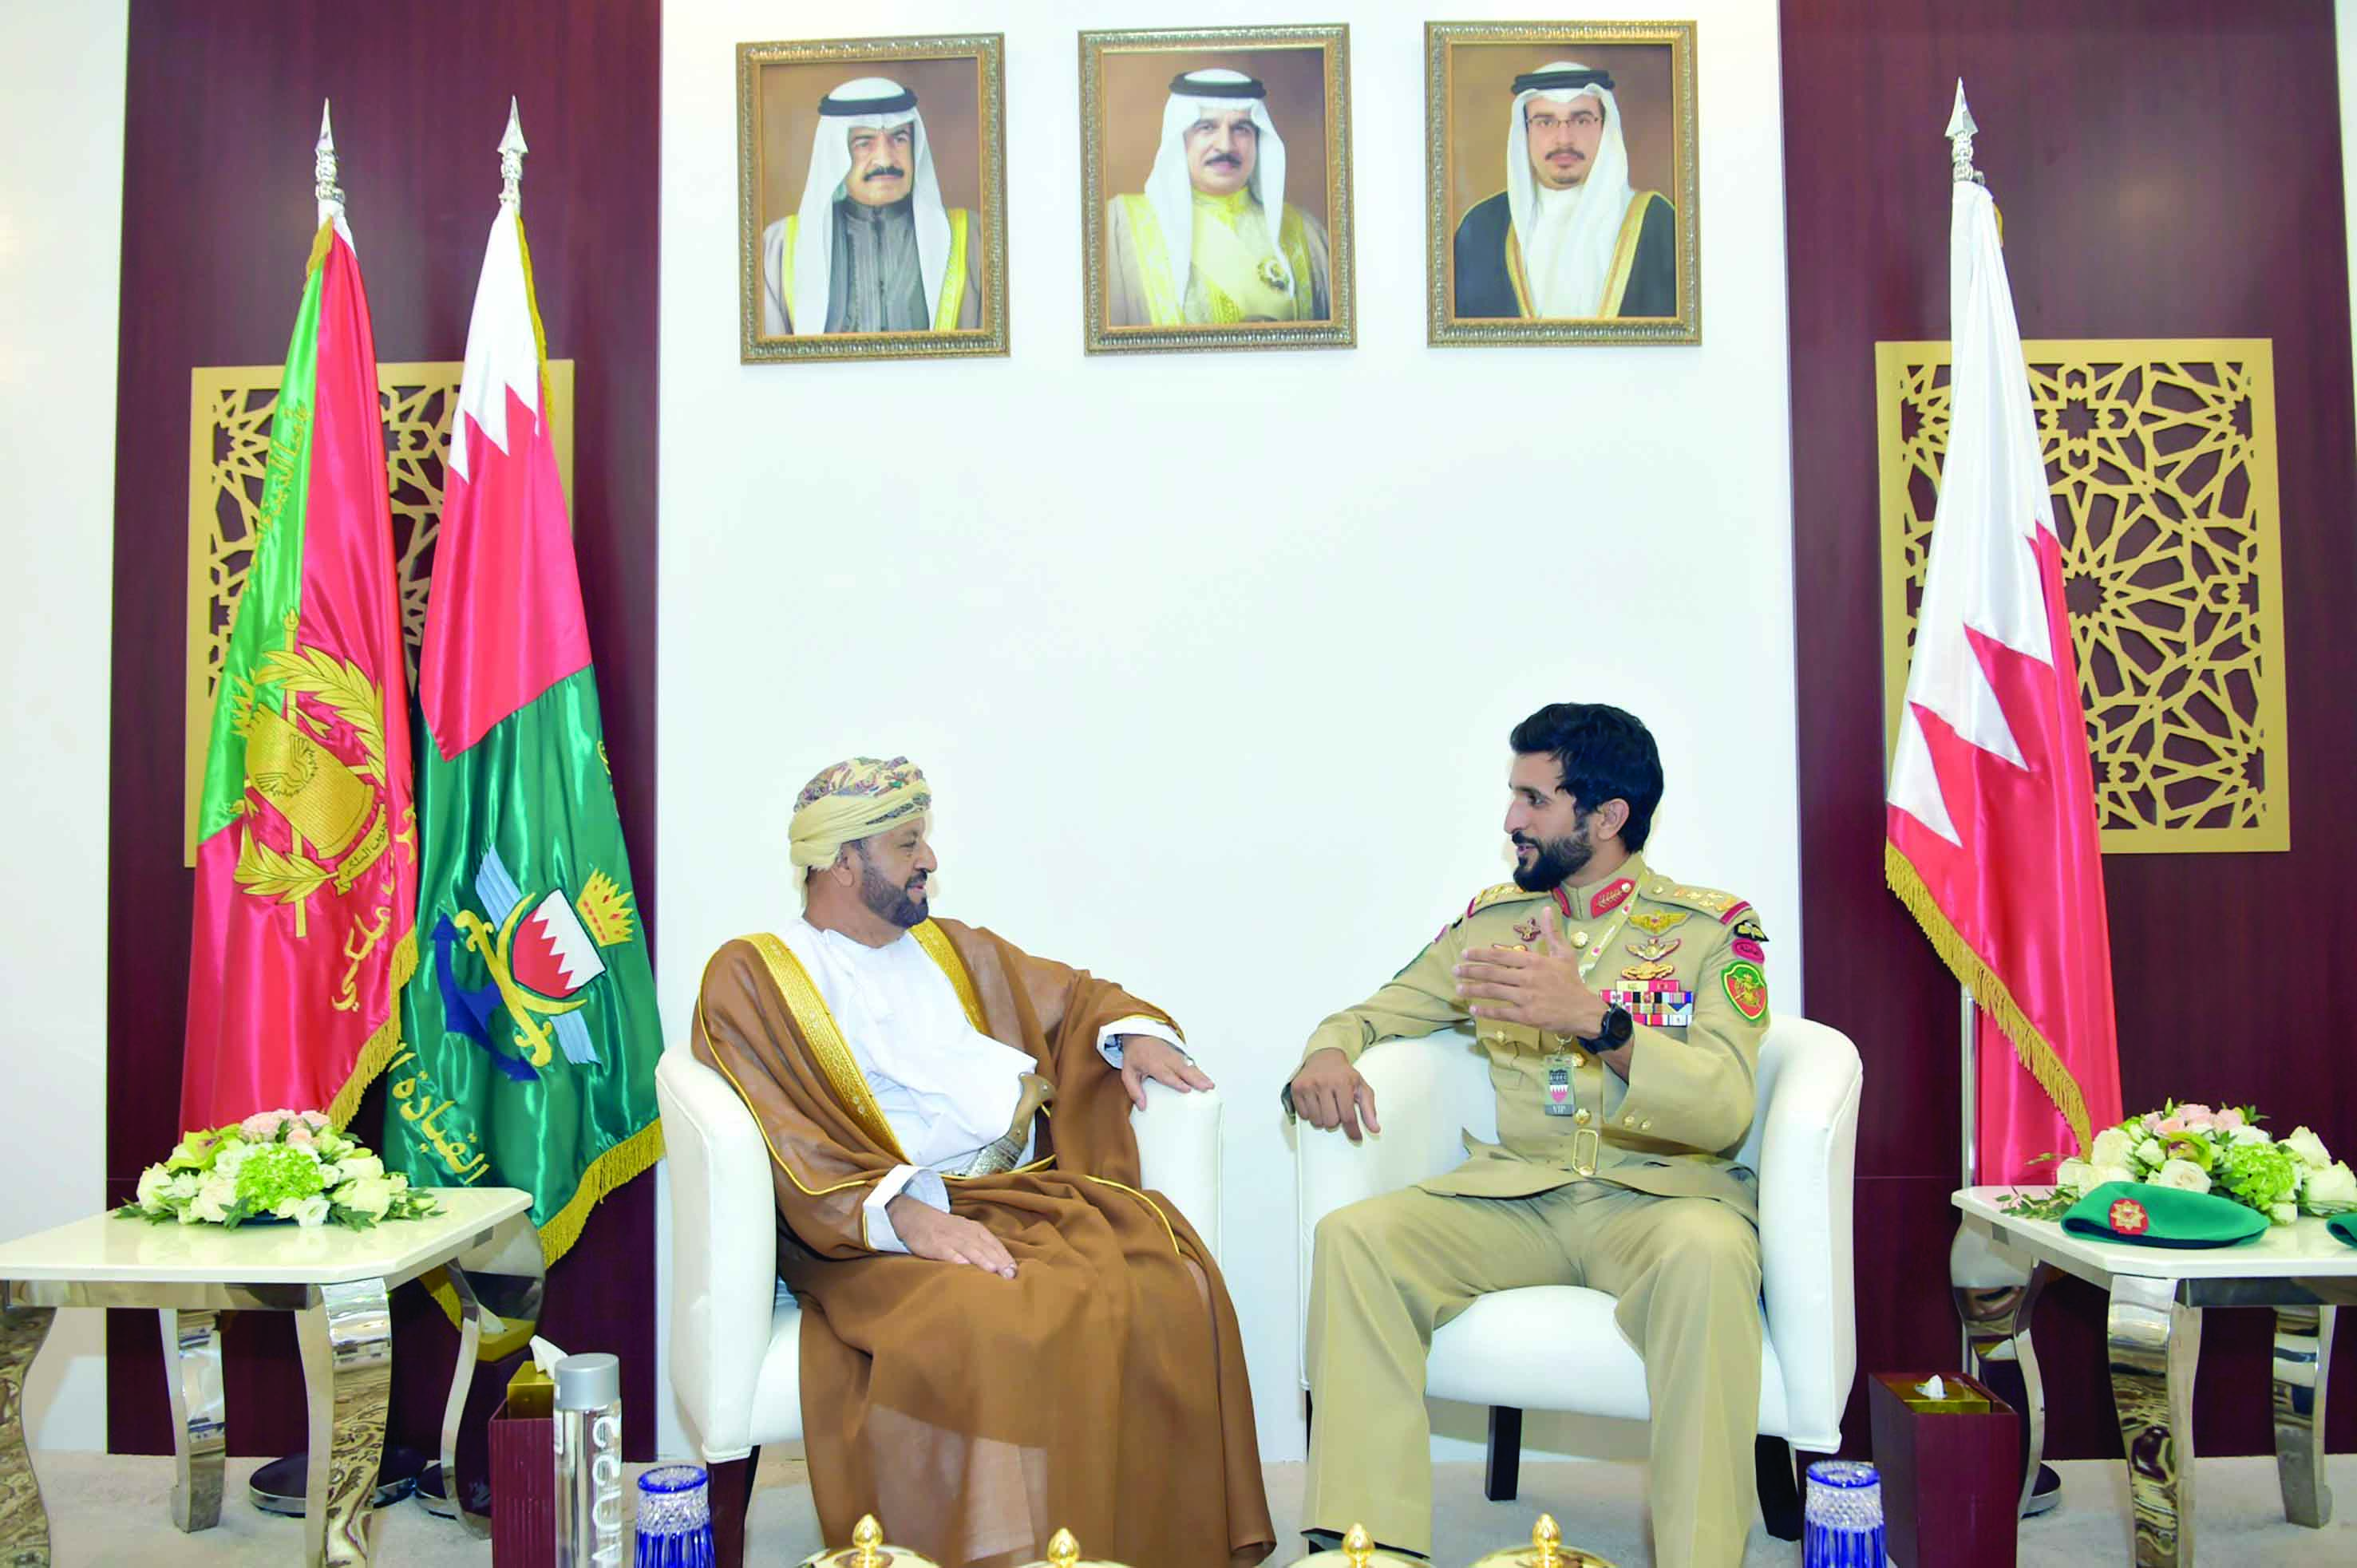 التقى قائد الحرس الملكي والقائد العام لقوة دفاع البحرين

البوسعيدي يشارك في افتتاح معرض البحرين للدفاع